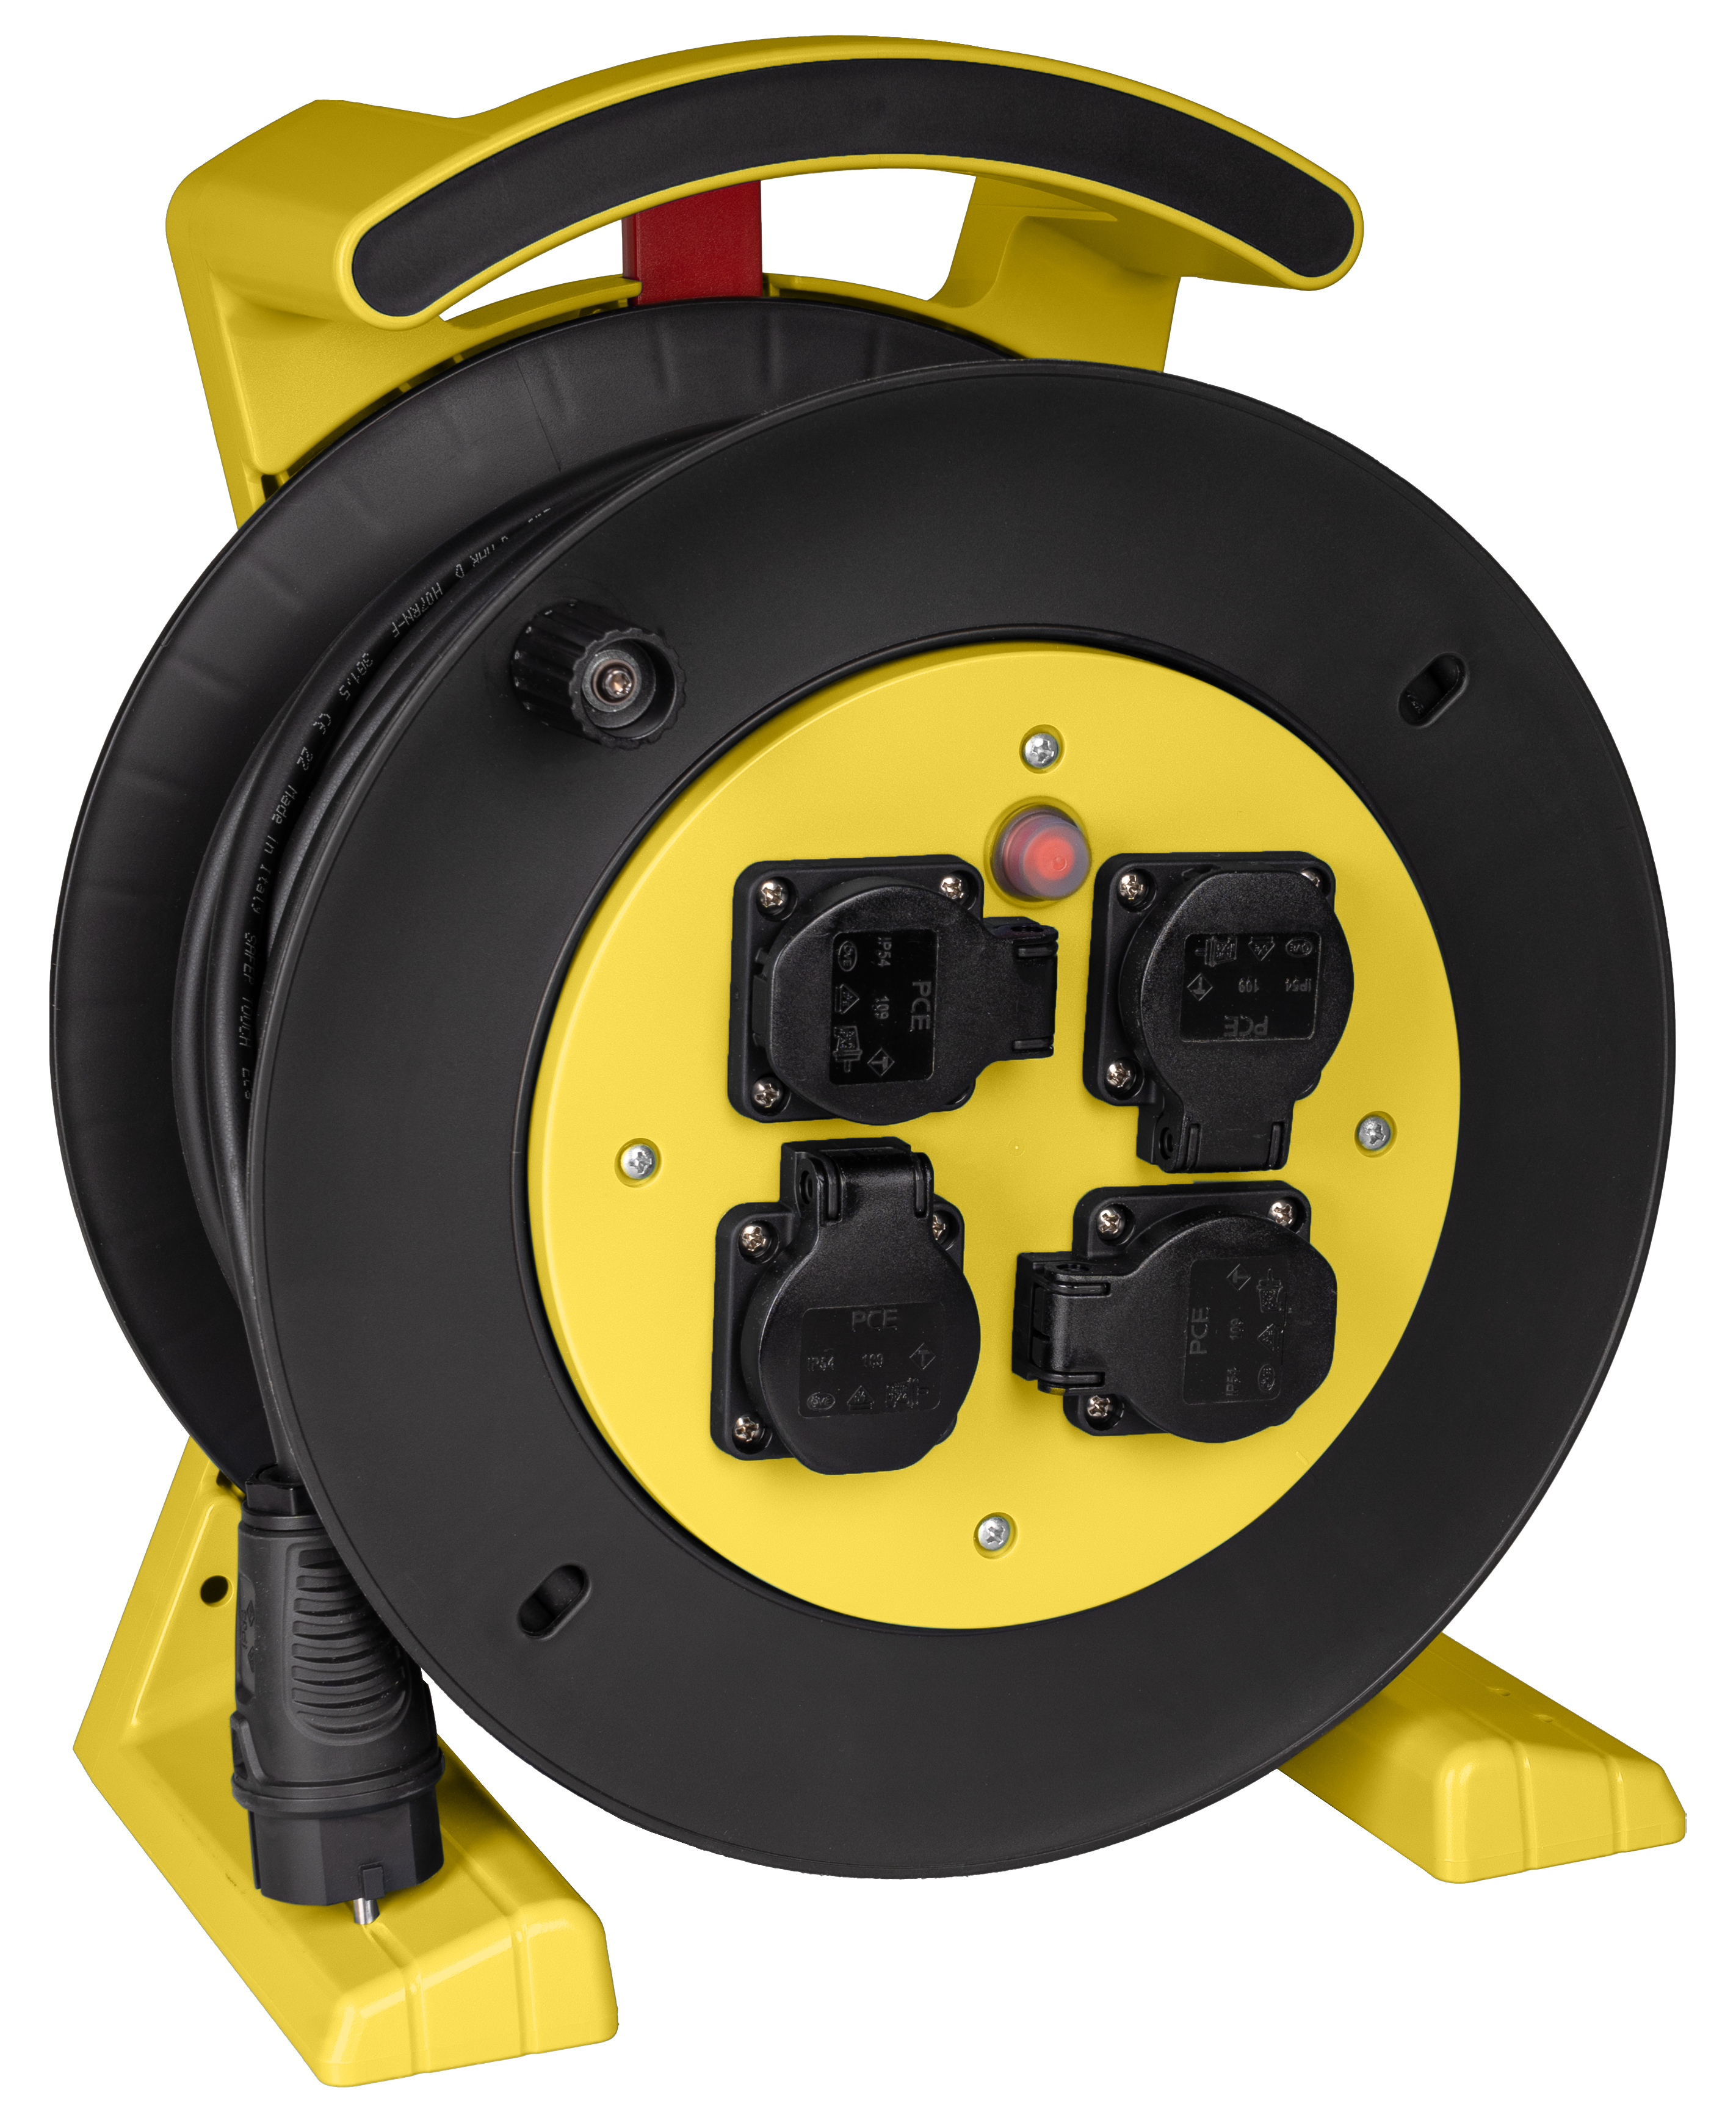 JUMBO kabelhaspel 2.0 in geel-zwart, 4 contactdozen, H07RN-F 3G1,5 mm², 40 m